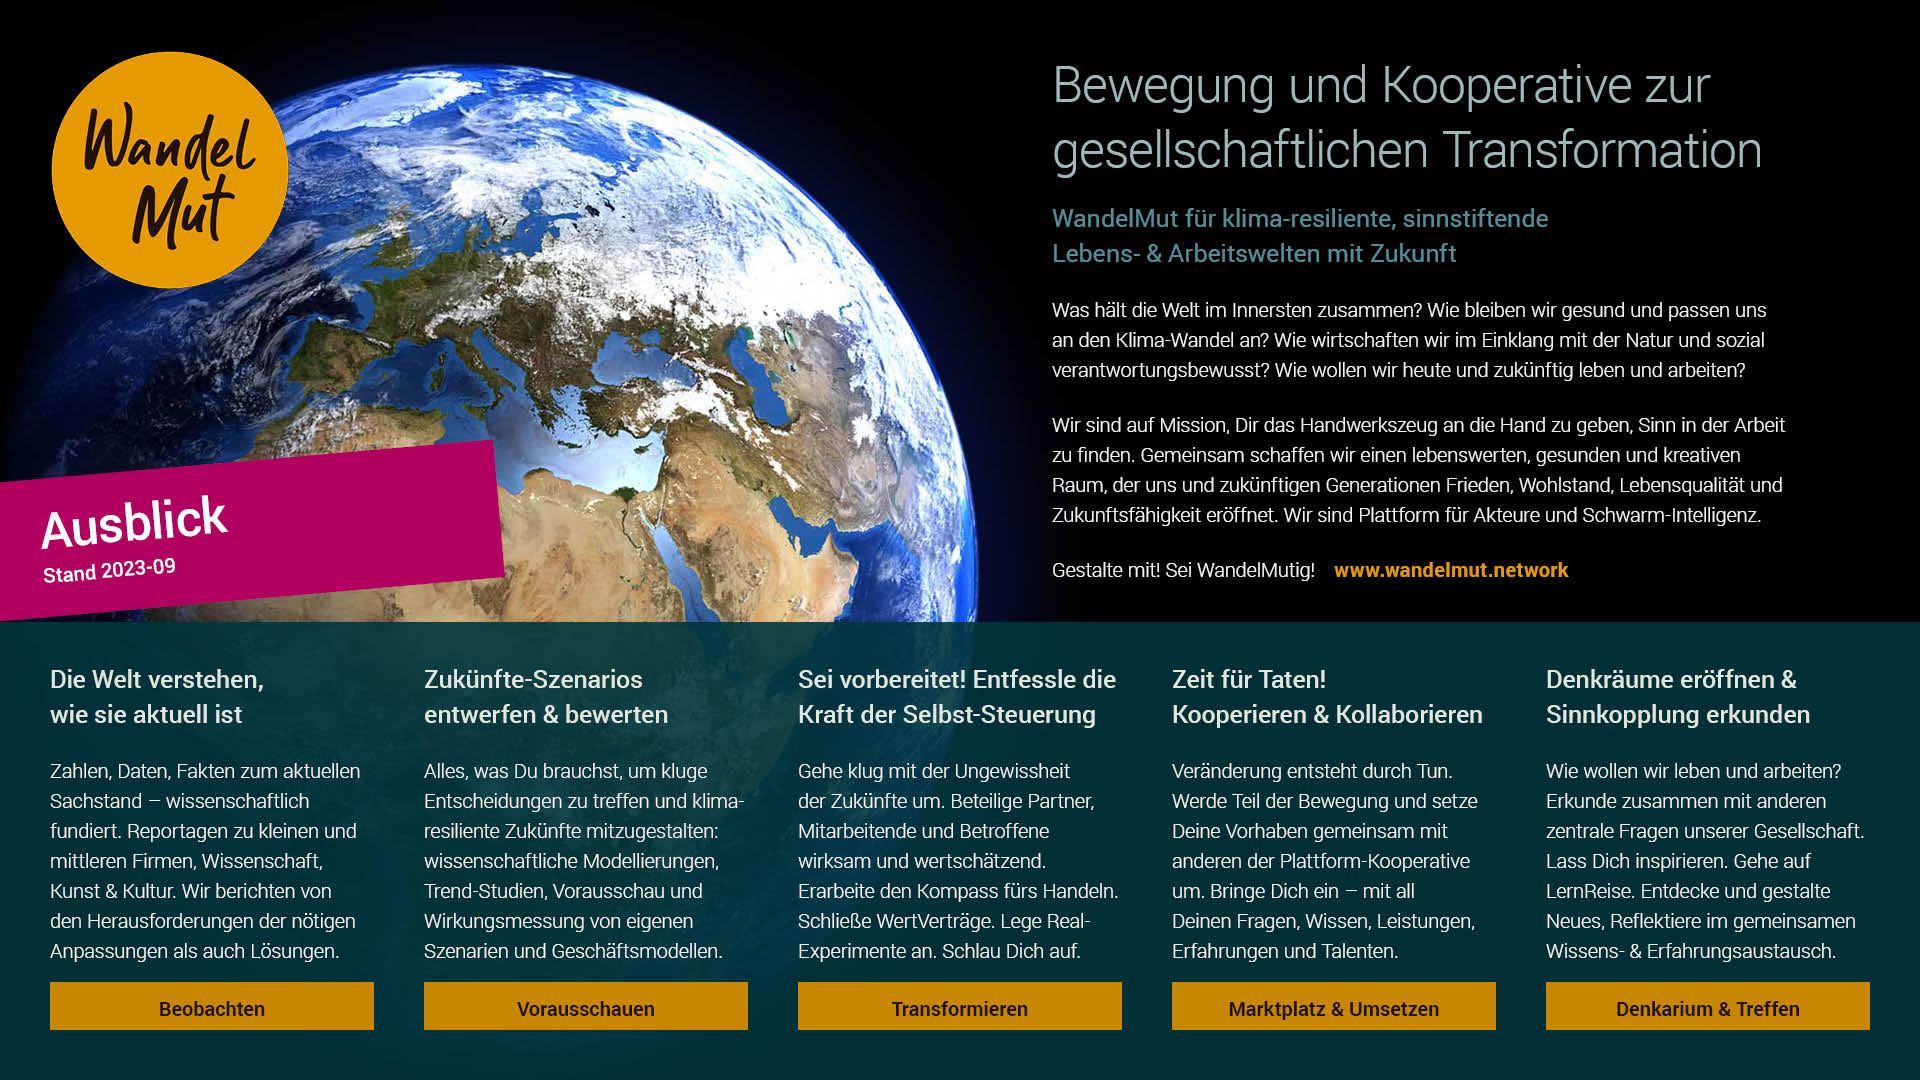 WandelMut: Ausblick auf die Online-Plattform der Bewegung und Kooperative zur gesellschaftlichen Transformation. Bild: copy WandelMut | Franziska Köppe . madiko